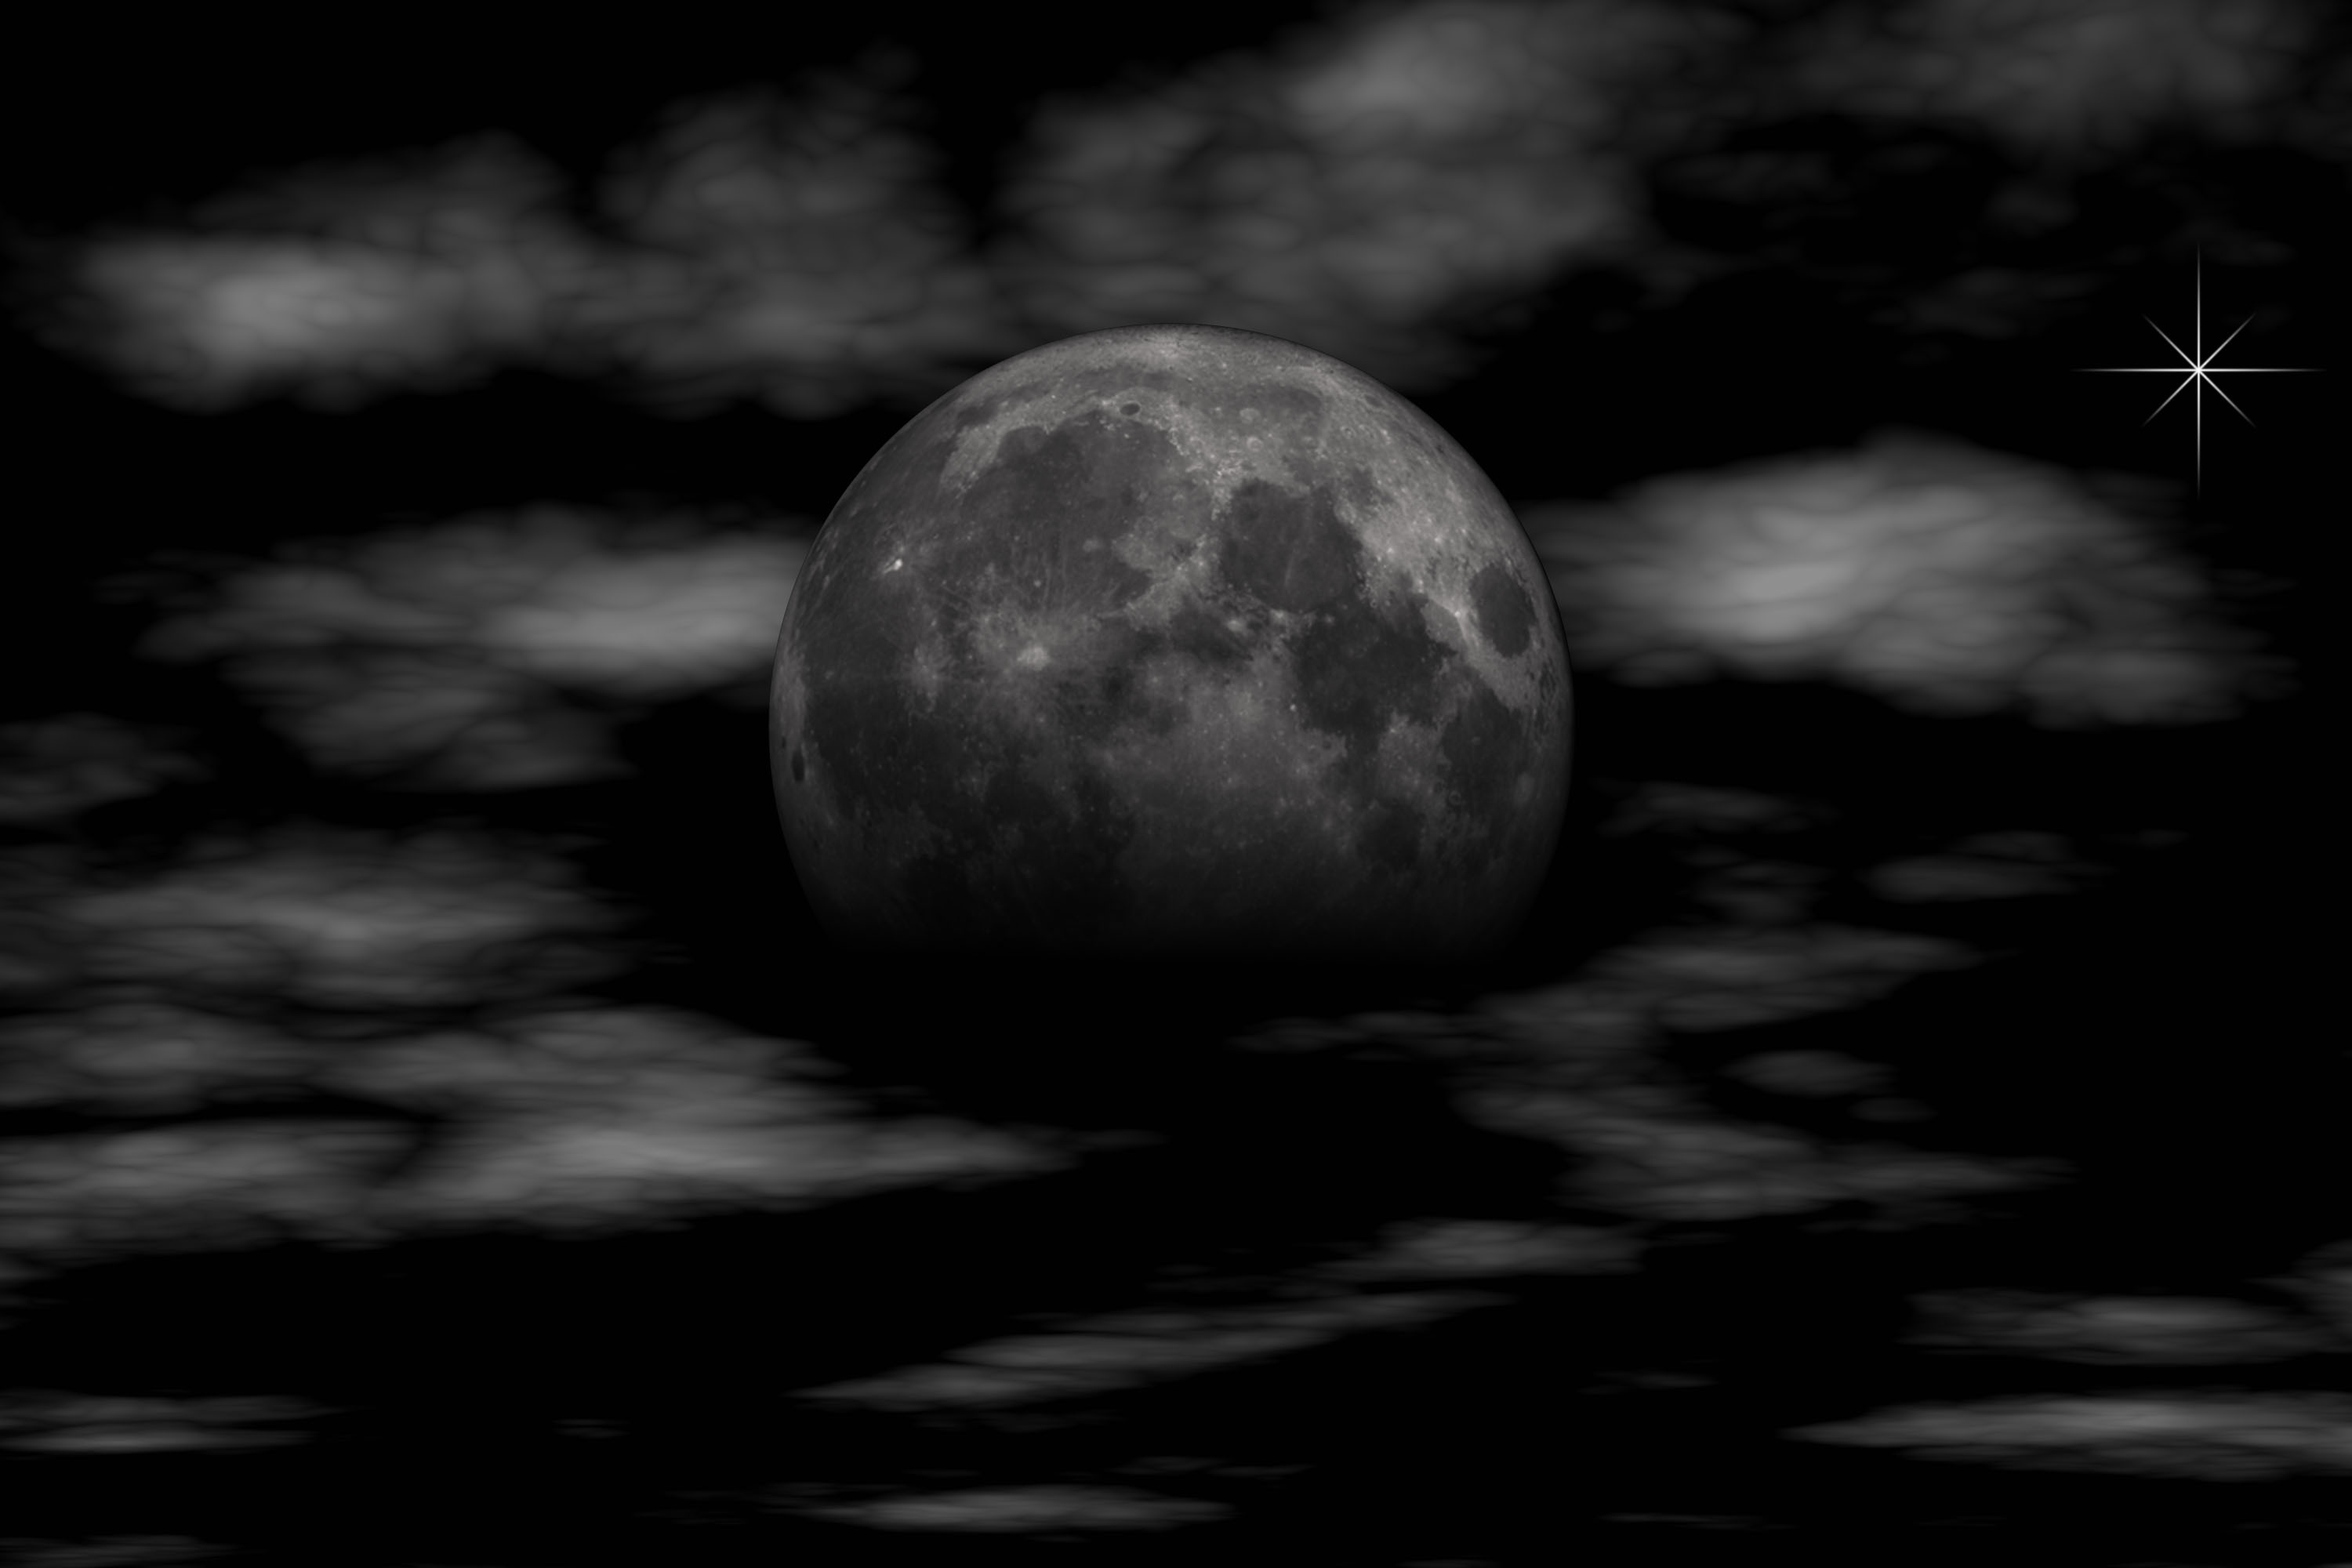 The moon by Susanlu4esm